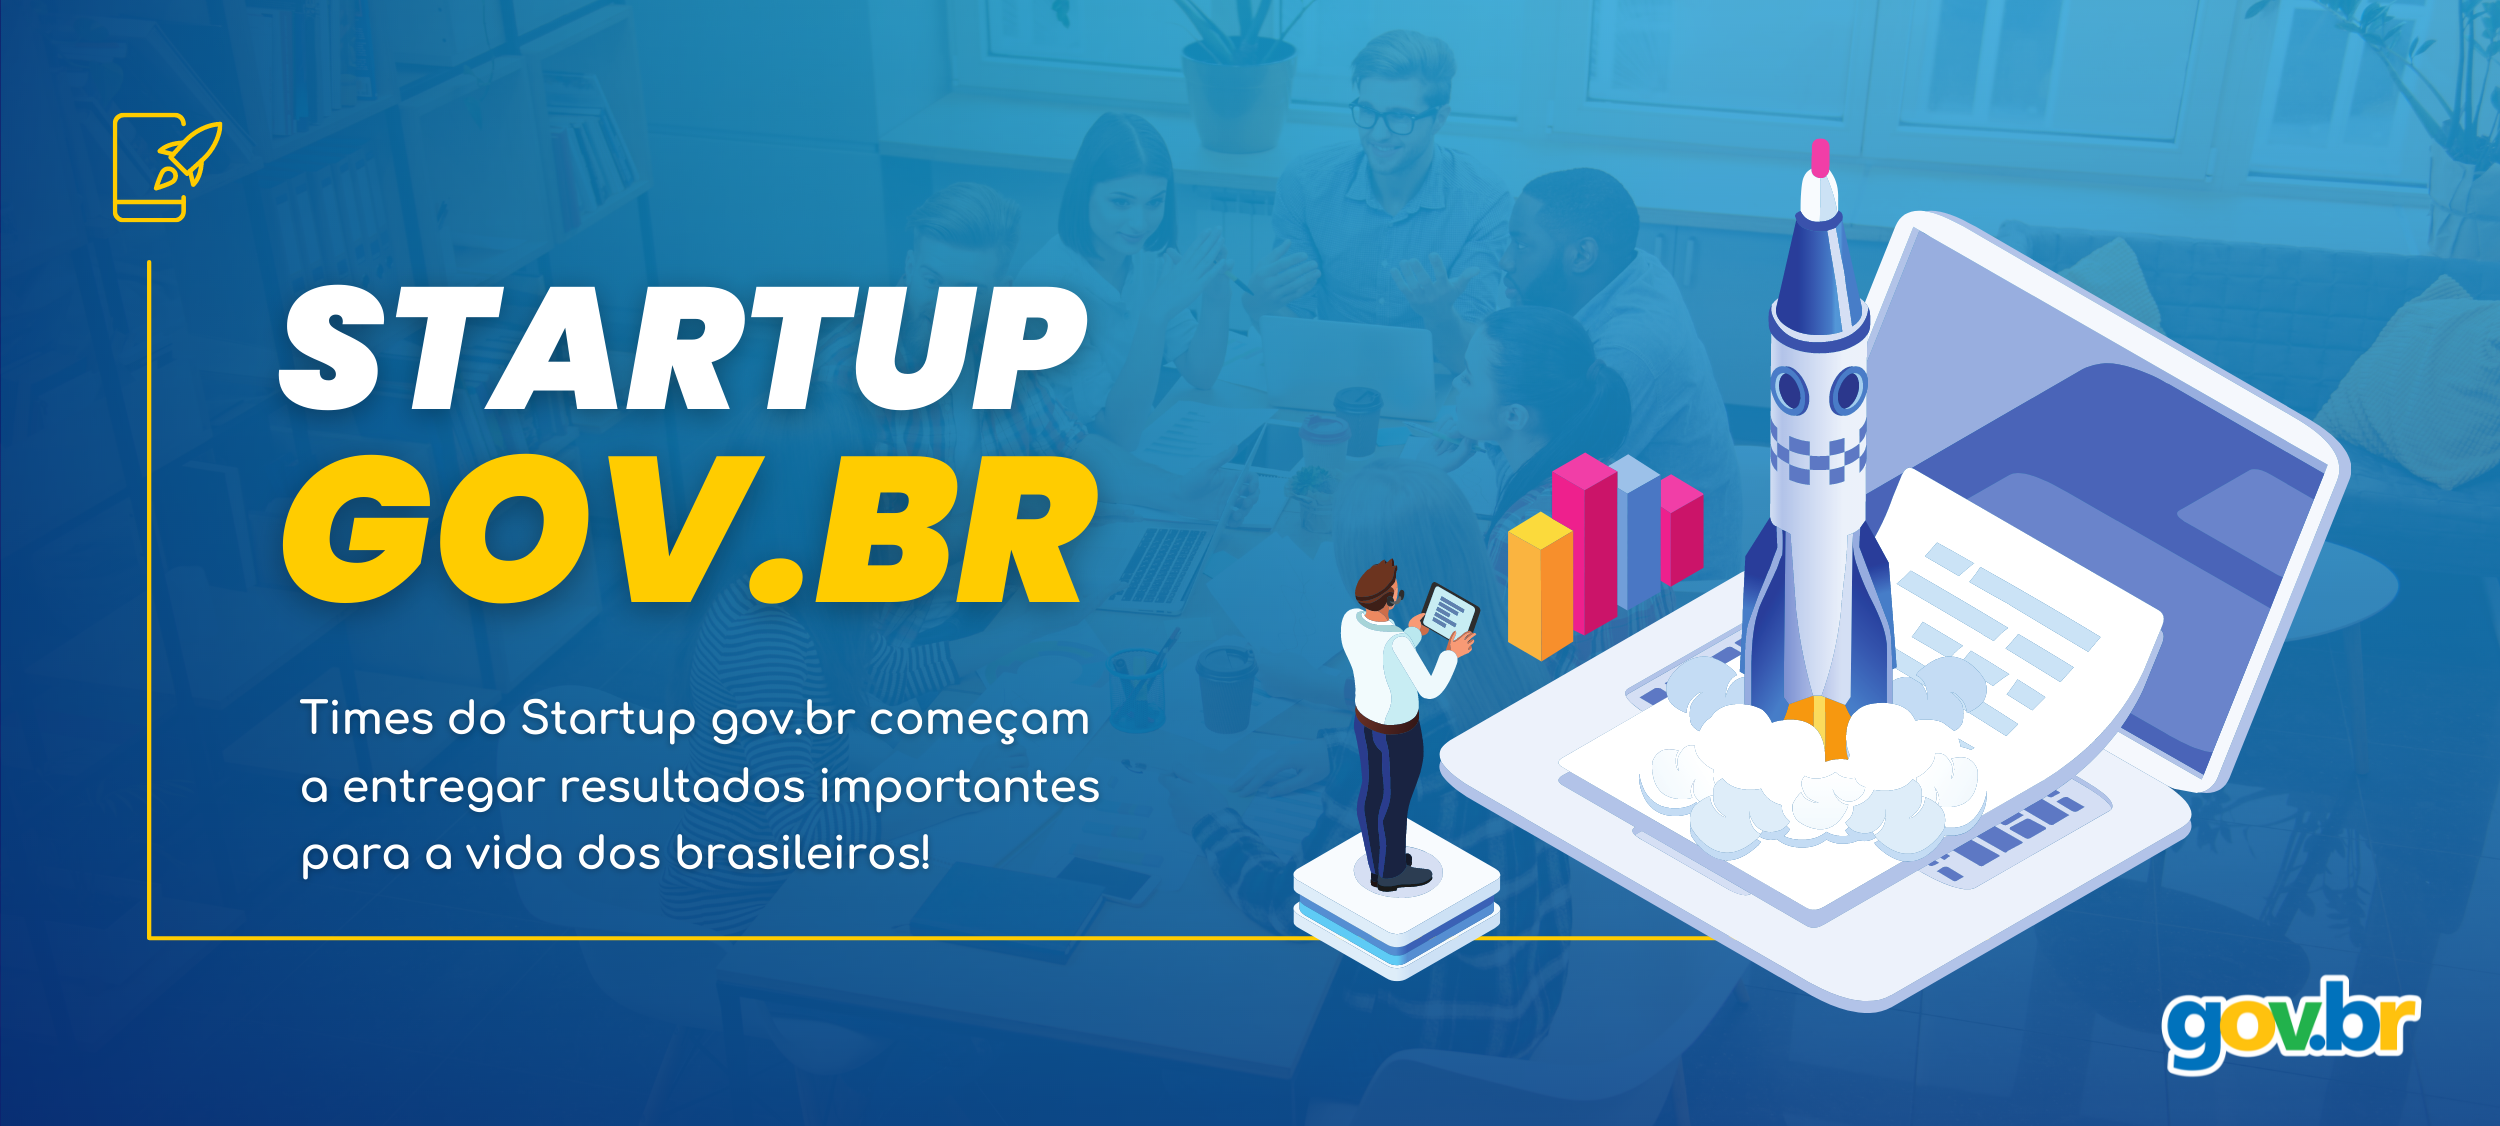 Banner Startup gov.br